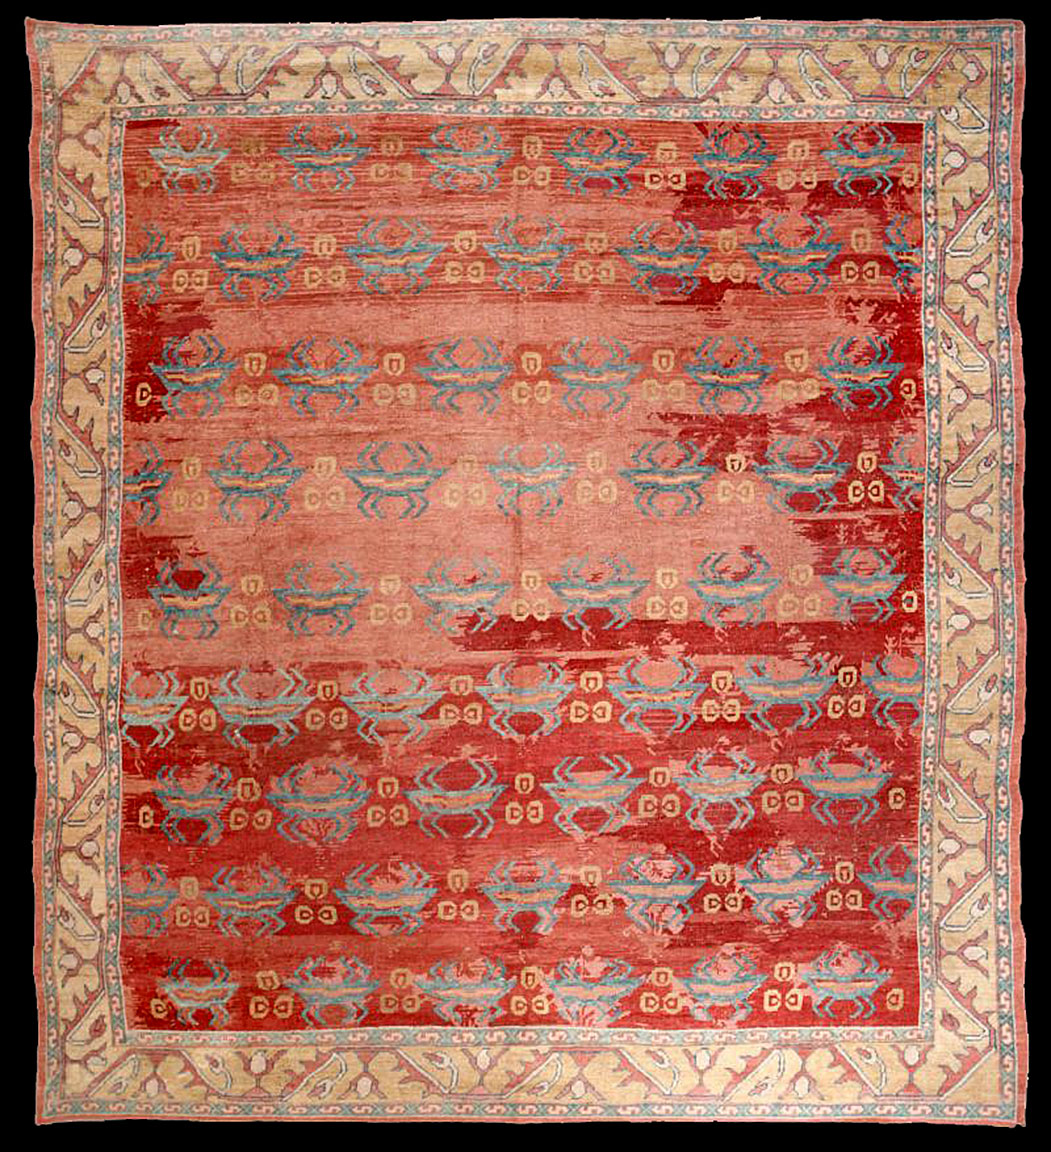 Antique oushak Carpet - # 51796